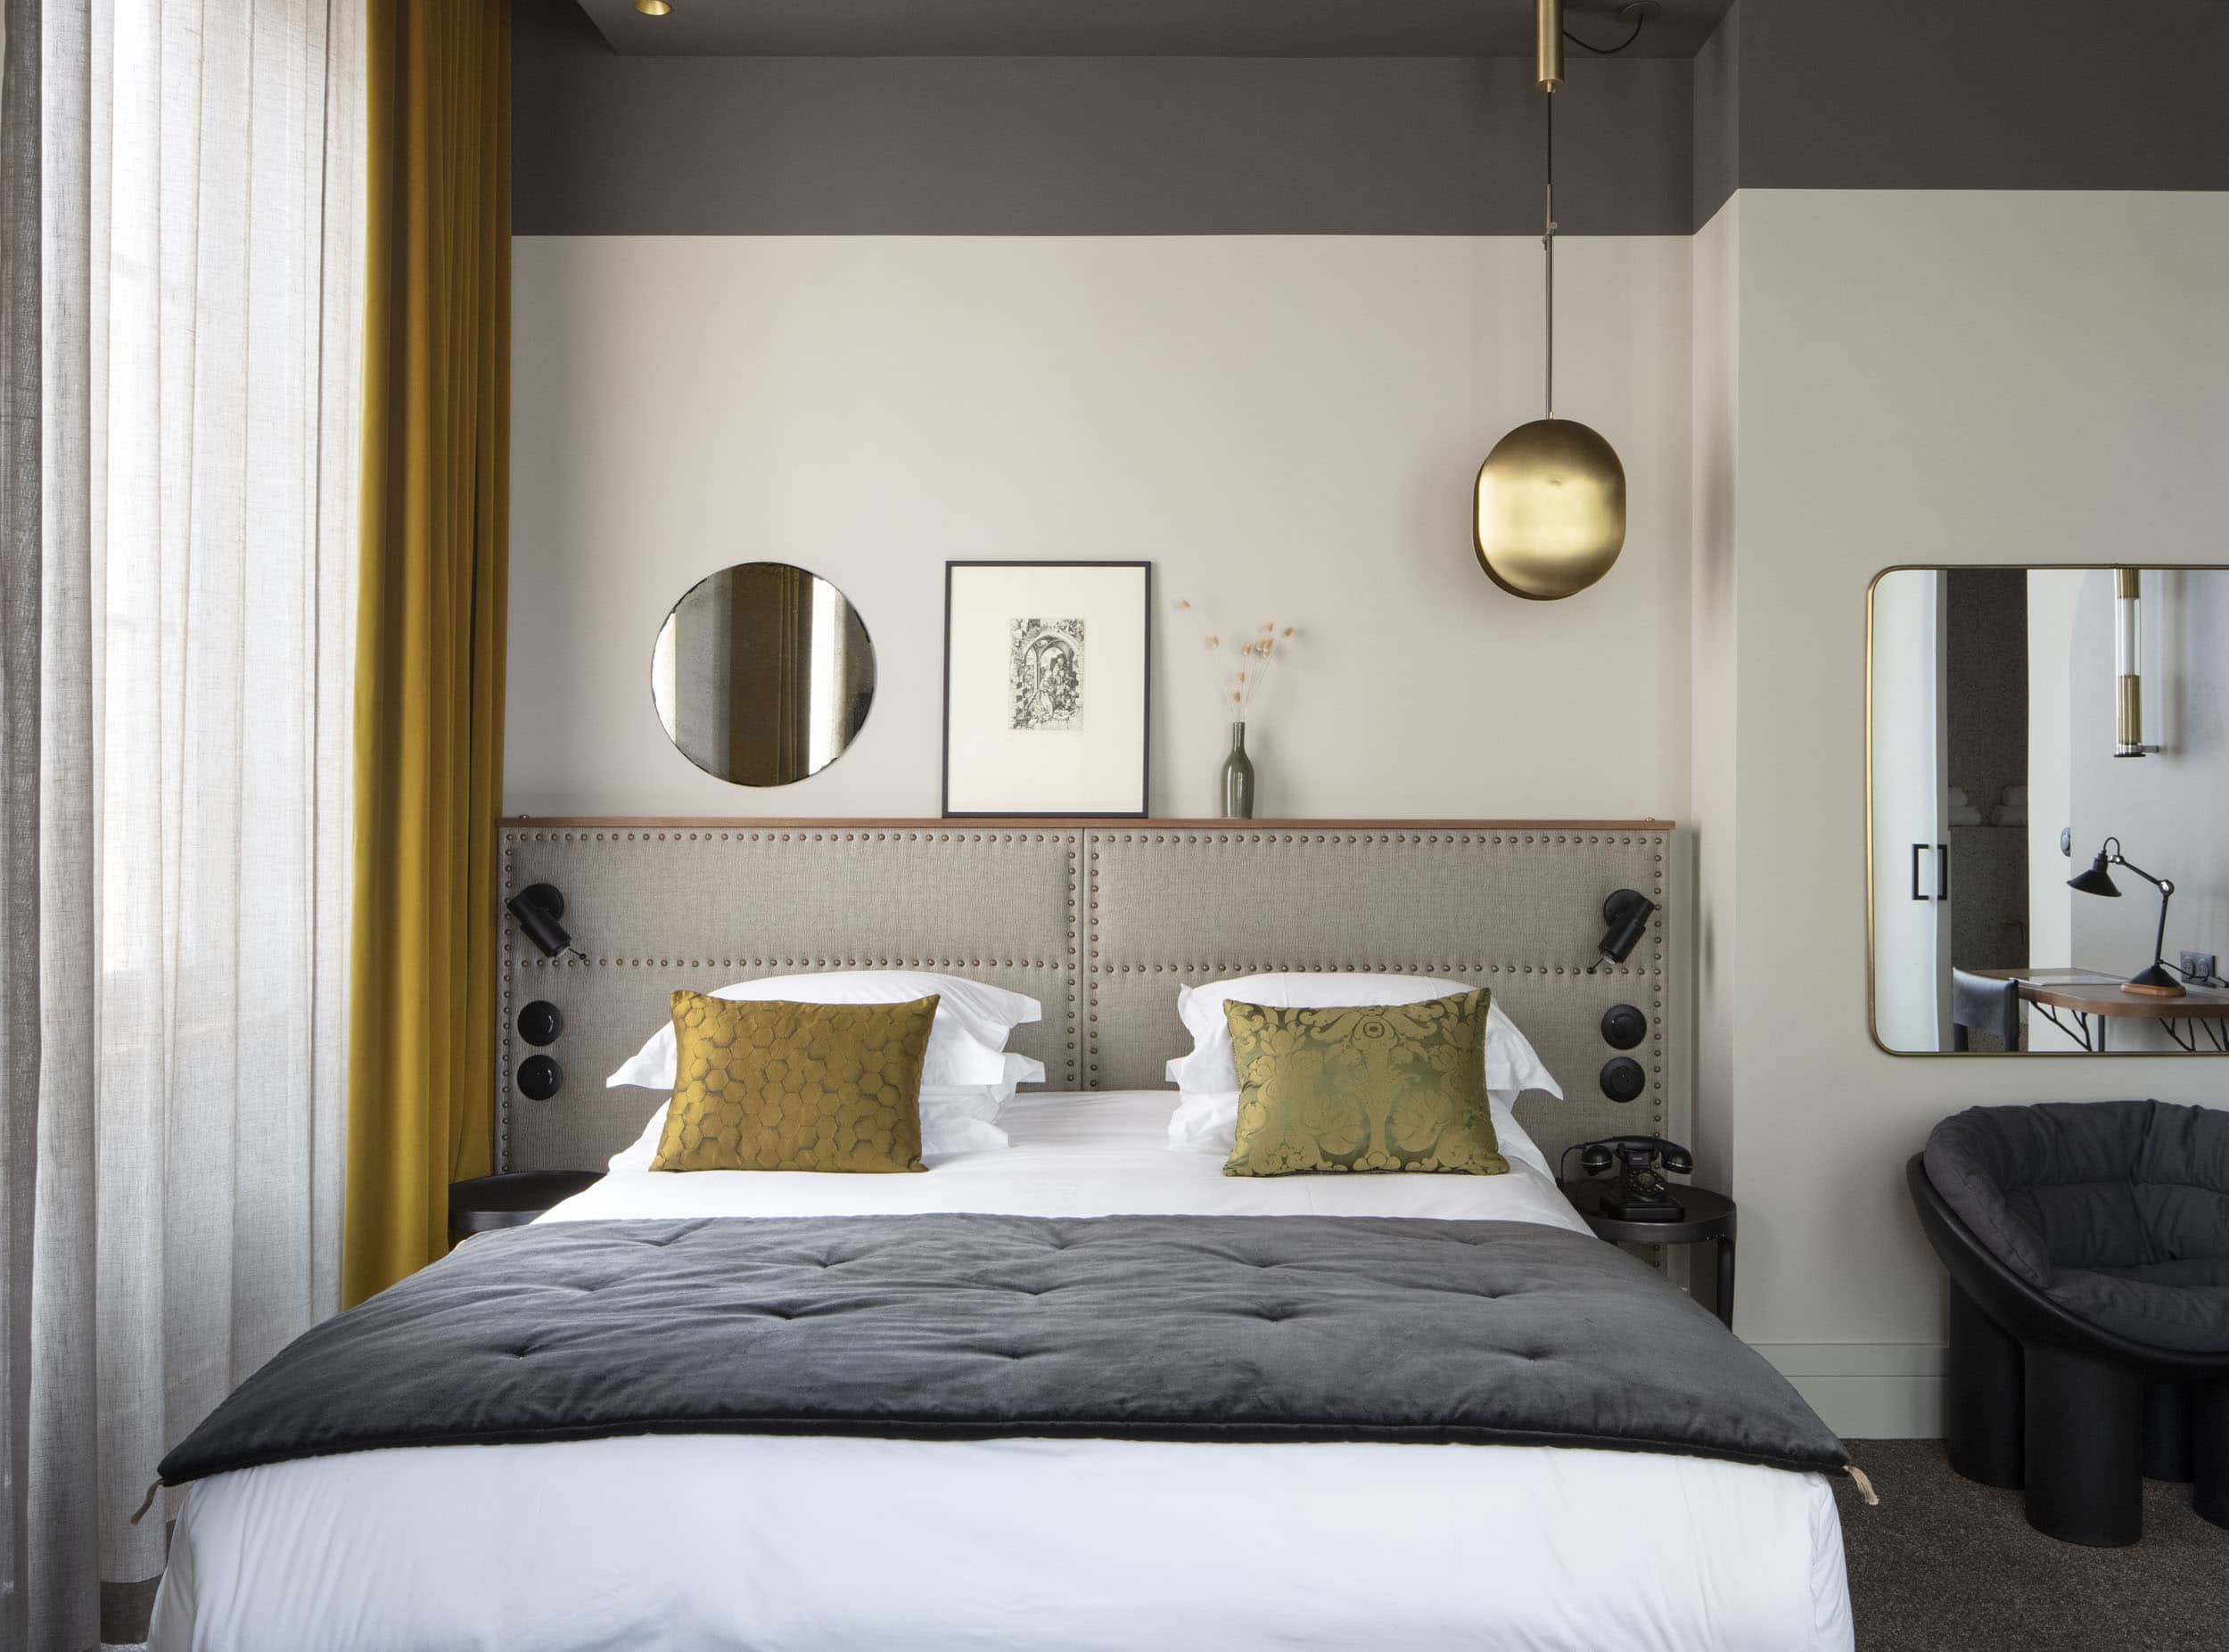 Descubra nossos quartos elegantes e confortáveis, decorados por designers.